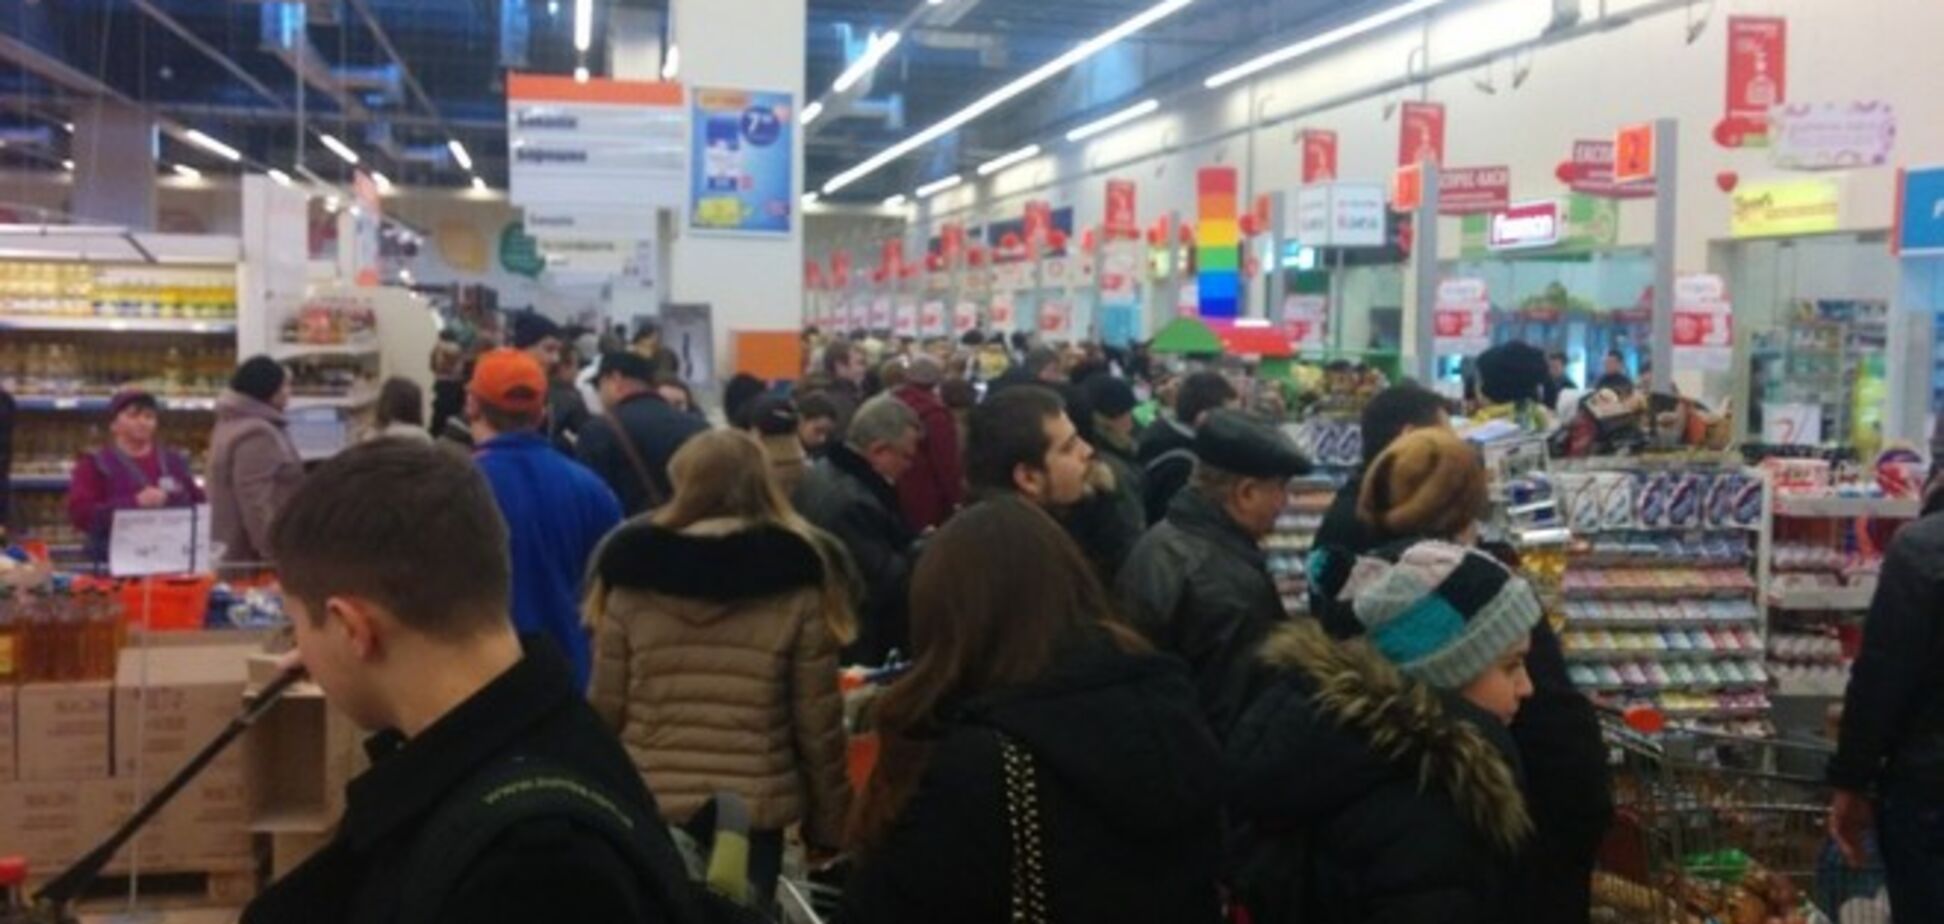 Обвал гривни провоцирует продуктовую панику: украинцы массово формируют 'стратегические запасы'